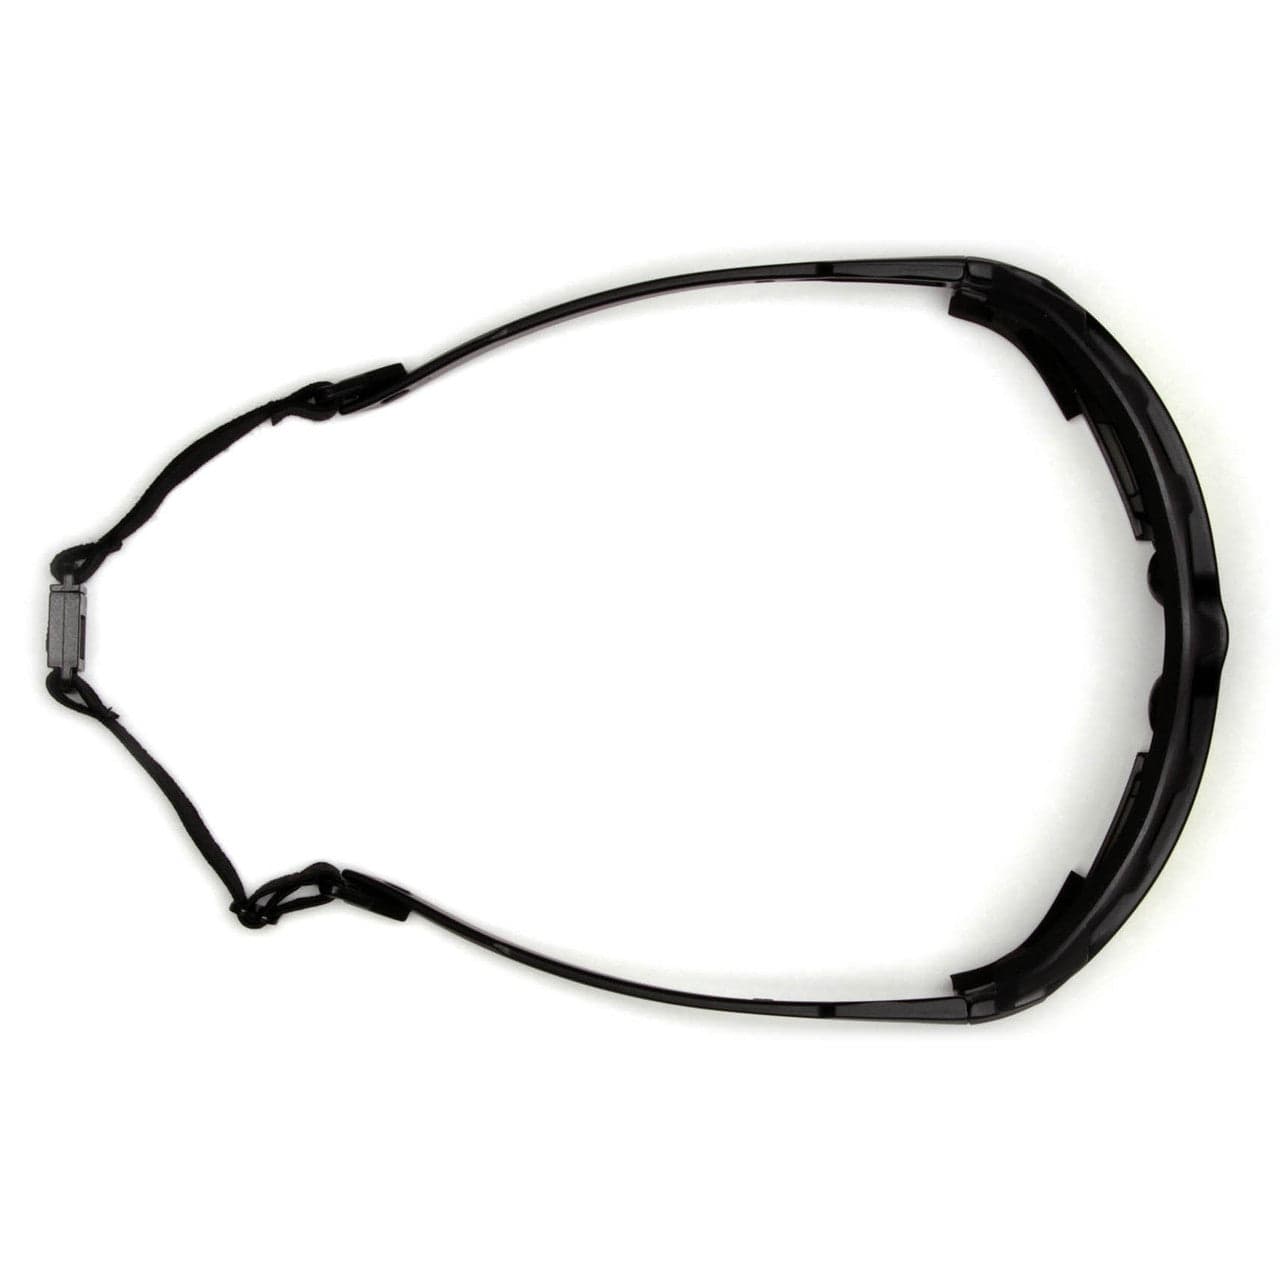 Pyramex Highlander Plus Safety Glasses Black Foam-Lined Frame Amber Anti-Fog Lens SBG5030DT Top